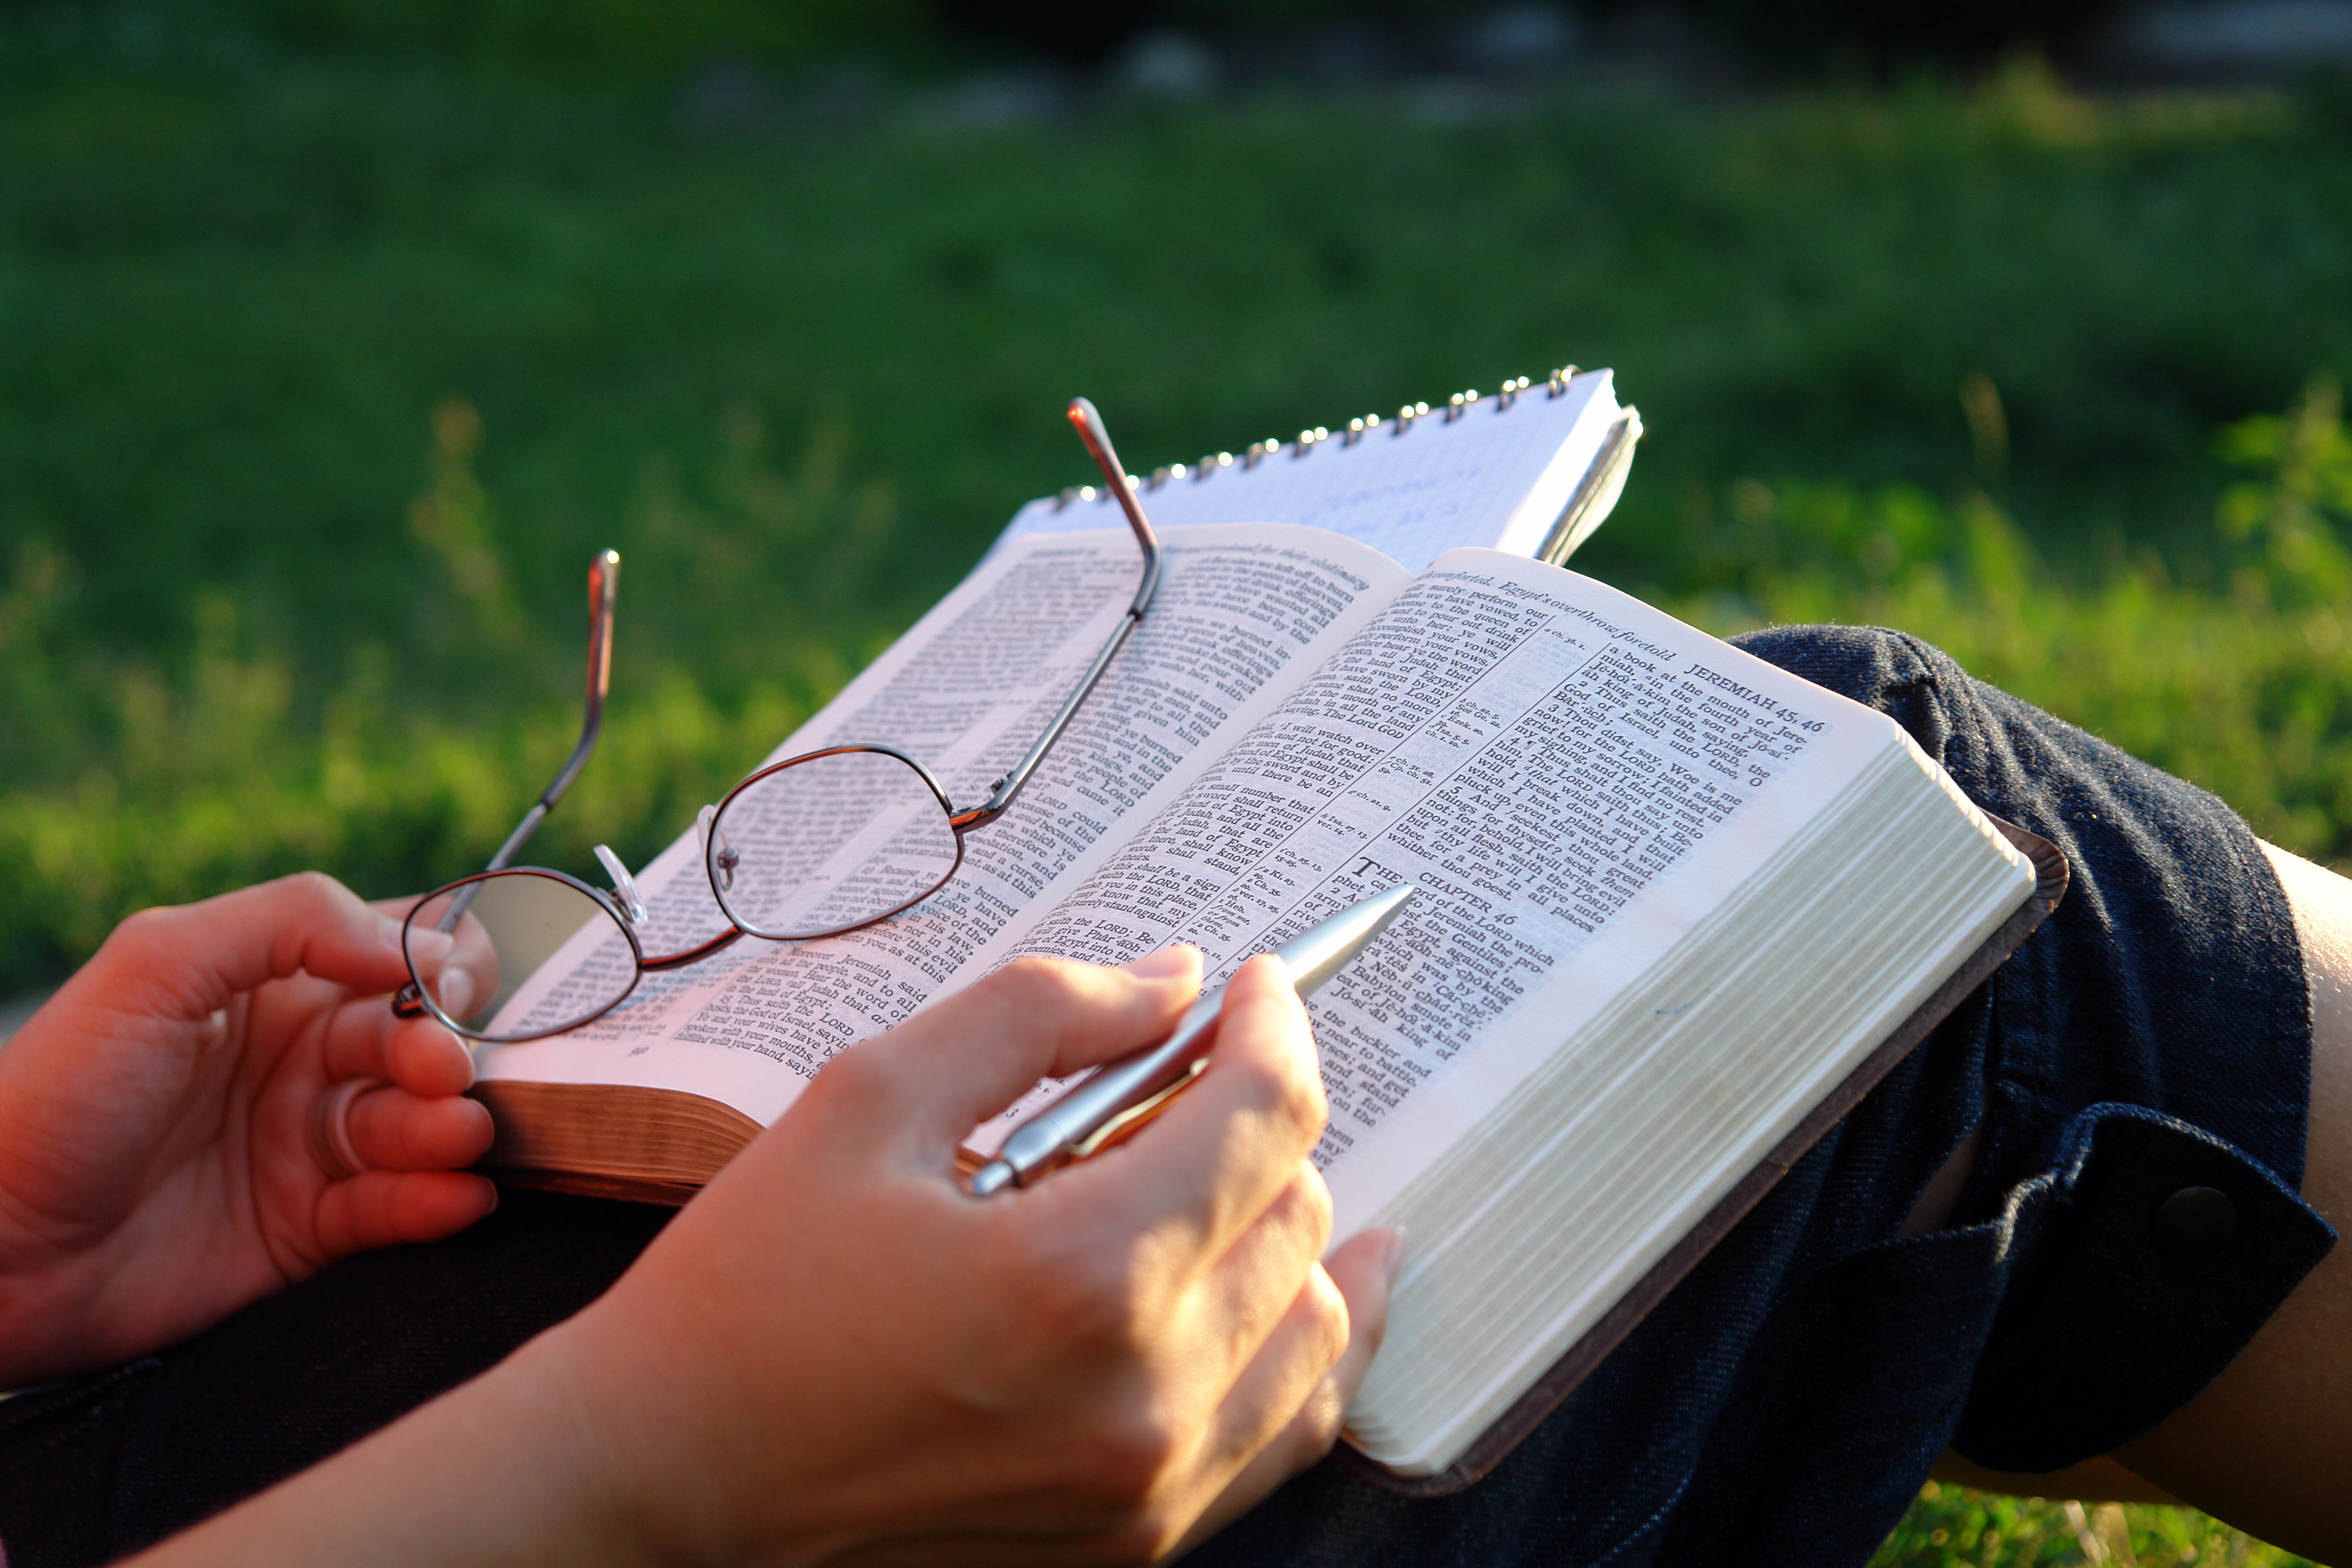 Библию читать будем. Библия в руках. Человек читает Библию. Чтение Библии на природе. Человек с Библией на природе.